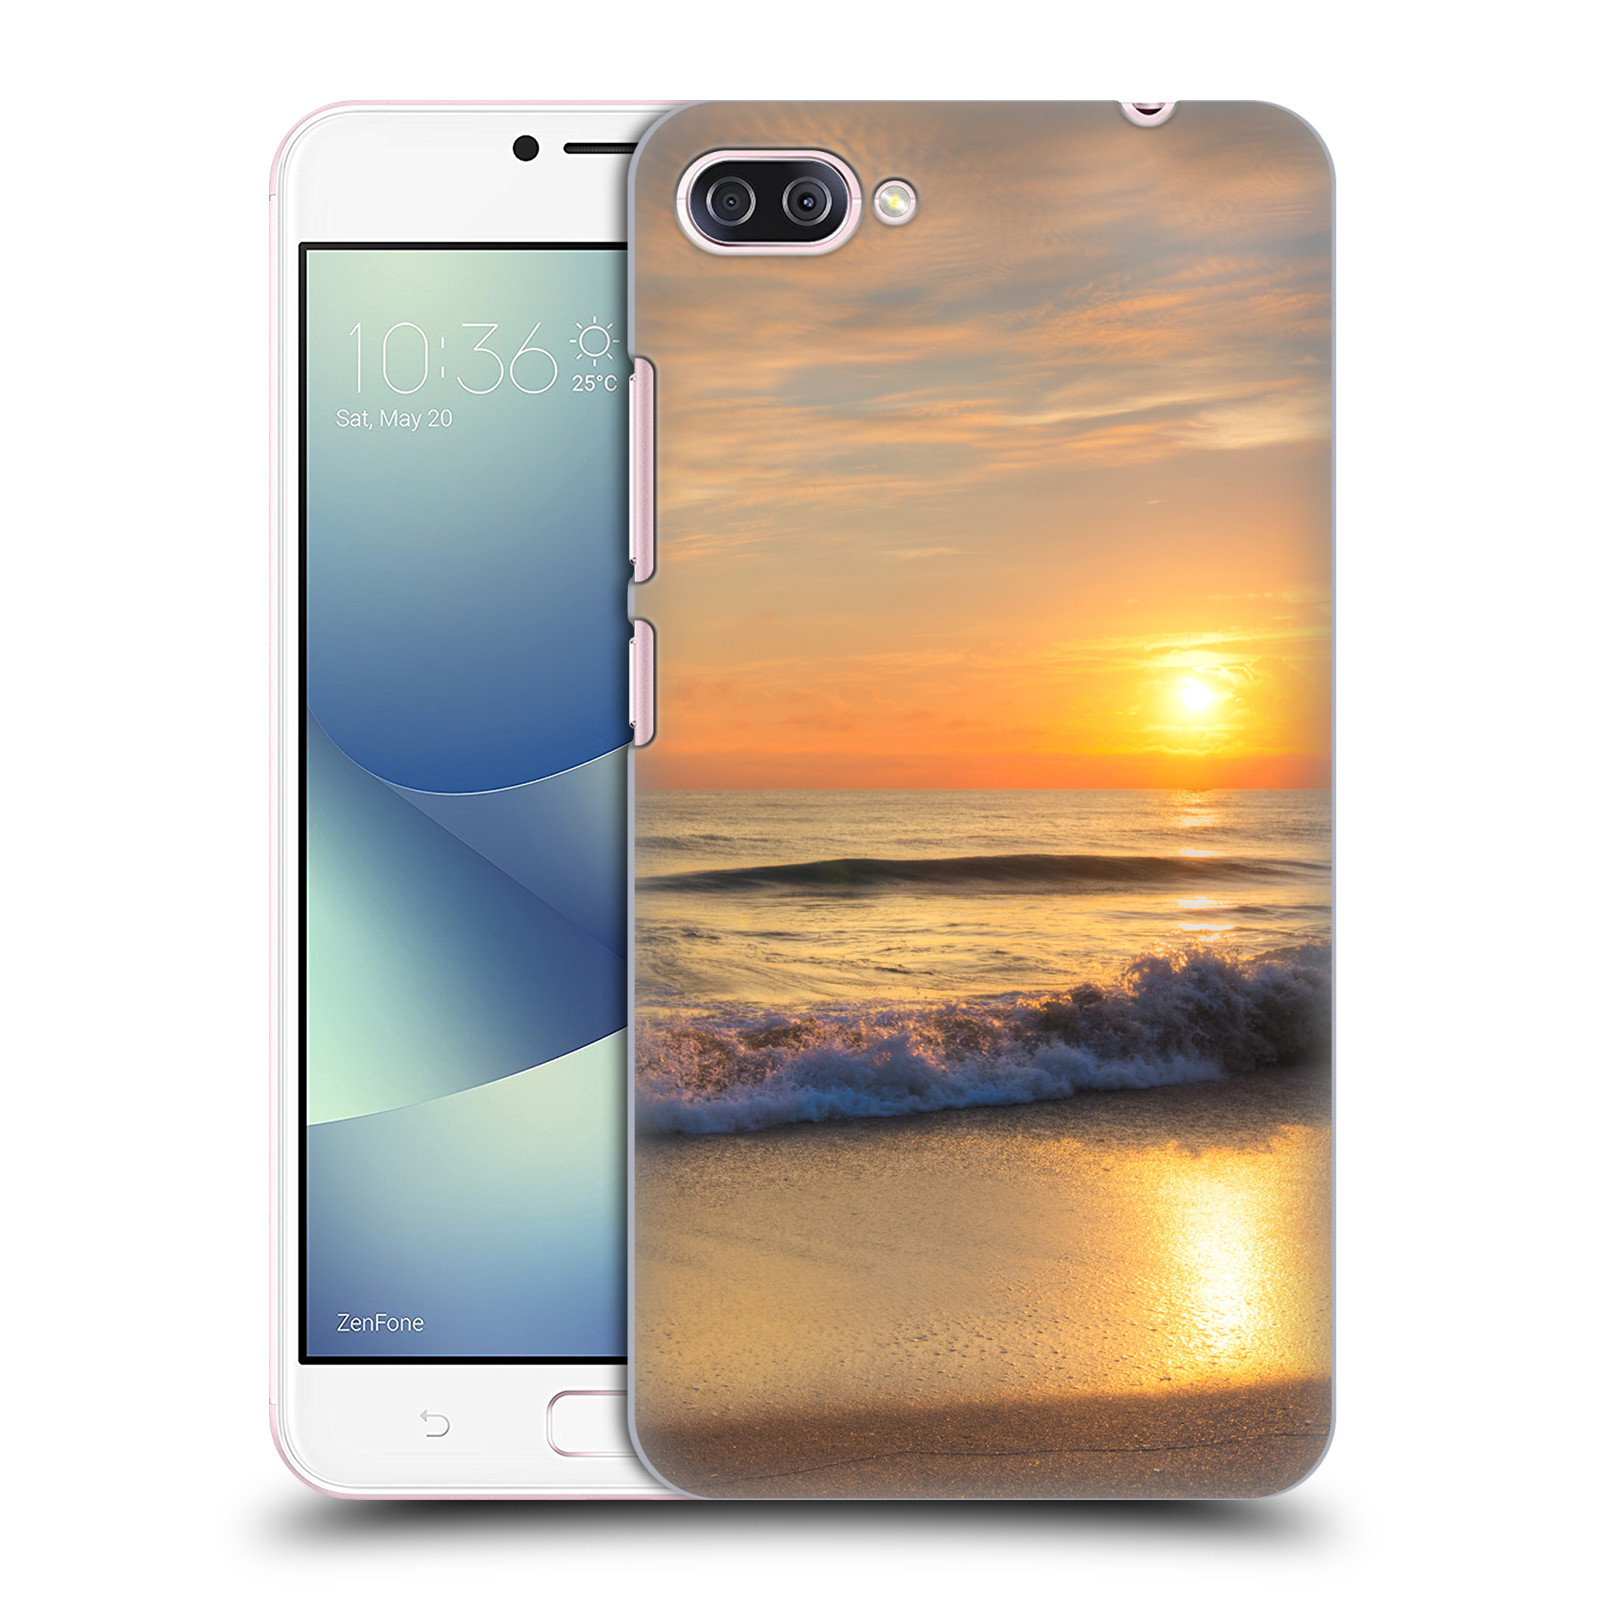 Zadní obal pro mobil Asus Zenfone 4 MAX / 4 MAX PRO (ZC554KL) - HEAD CASE - Krásy přirody - Nádherná pláž